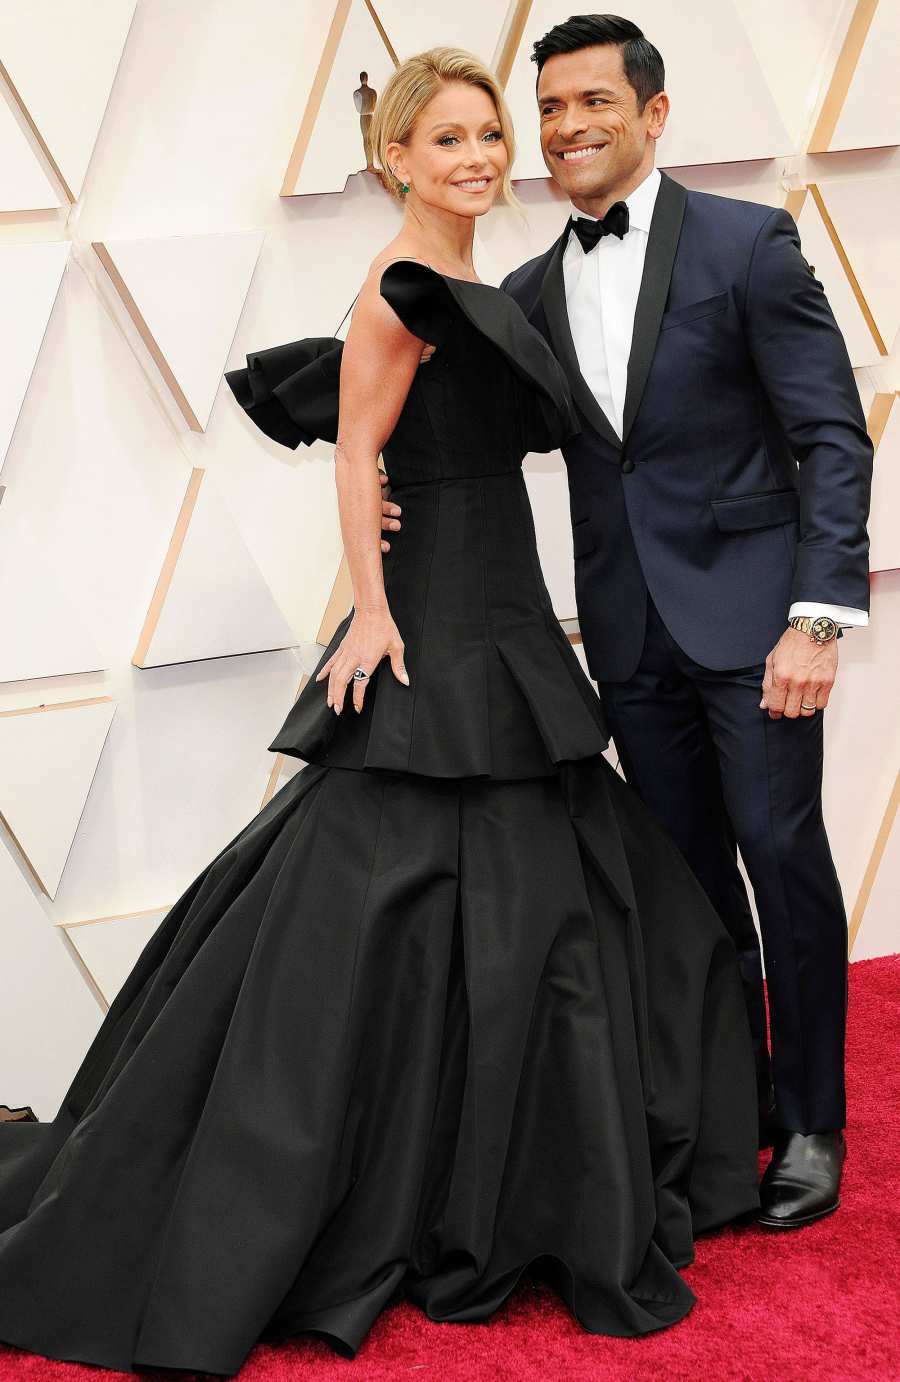 Best Oscars Couples 2020 - Kelly Ripa and Mark Consuelos